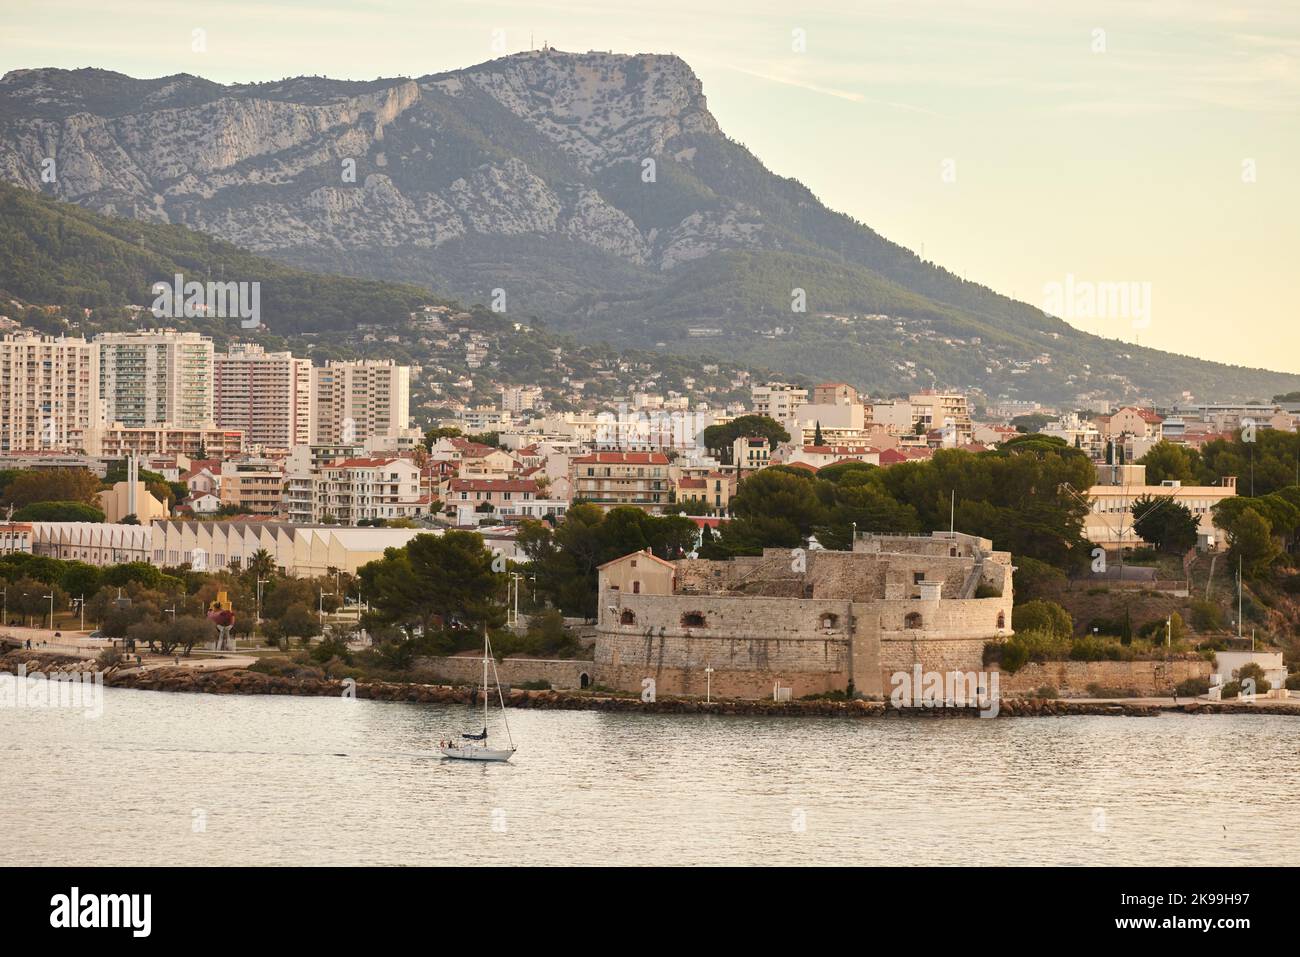 Ville portuaire de Toulon sur la côte méditerranéenne du sud de la France, la Tour Royale, fort de la Défense historique Banque D'Images